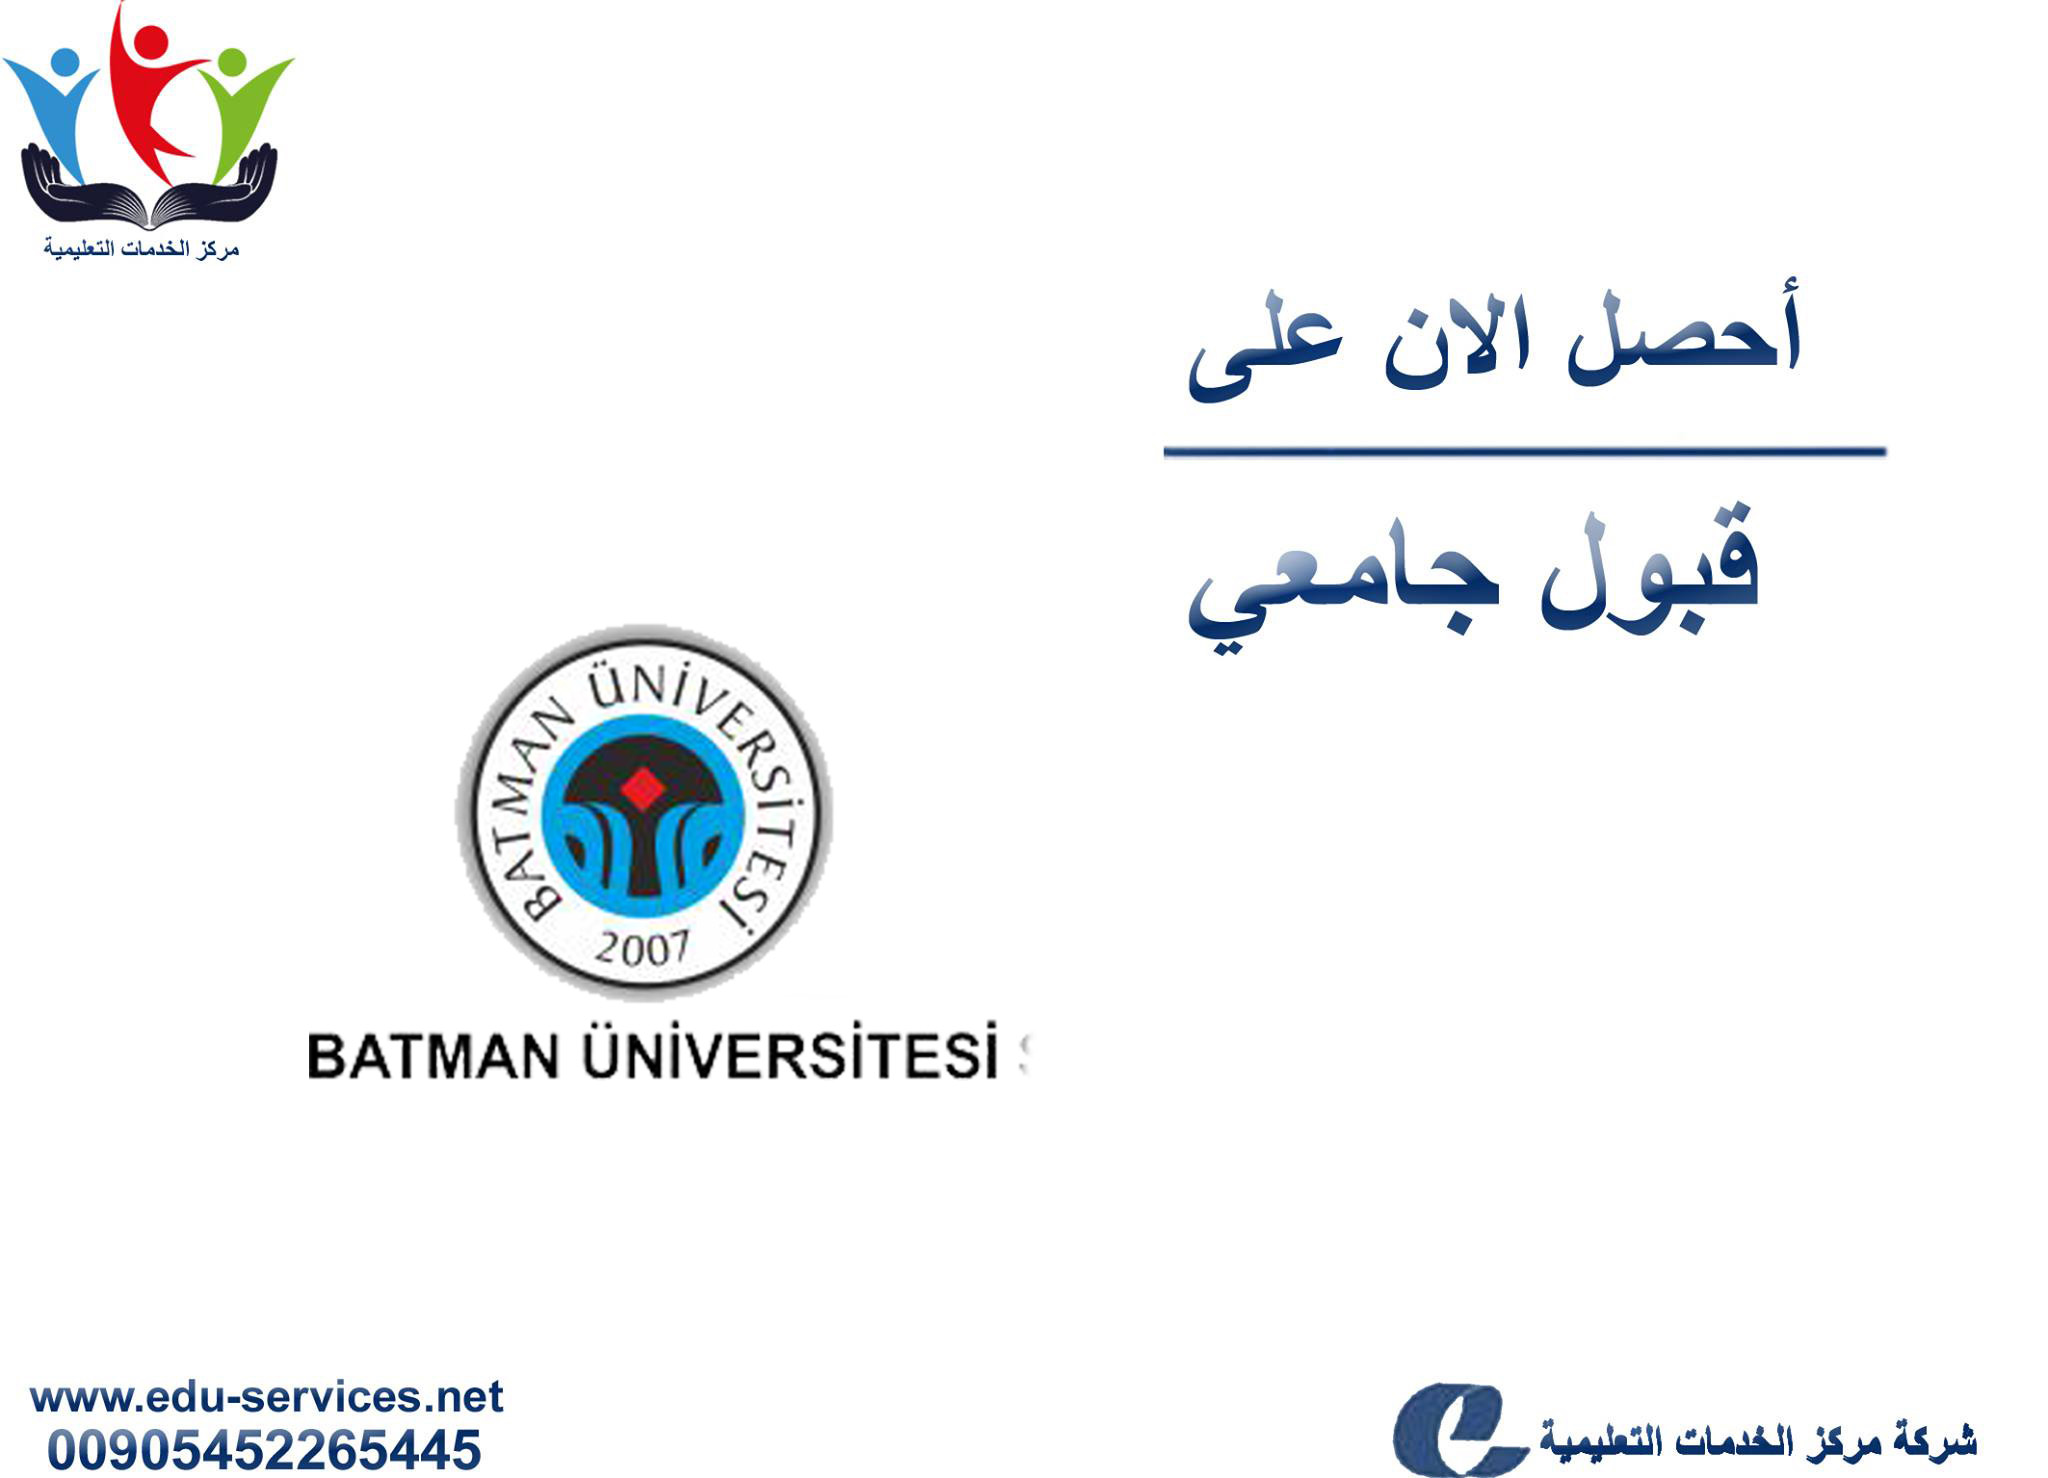 جامعة باتمان Batman Üniversitesi